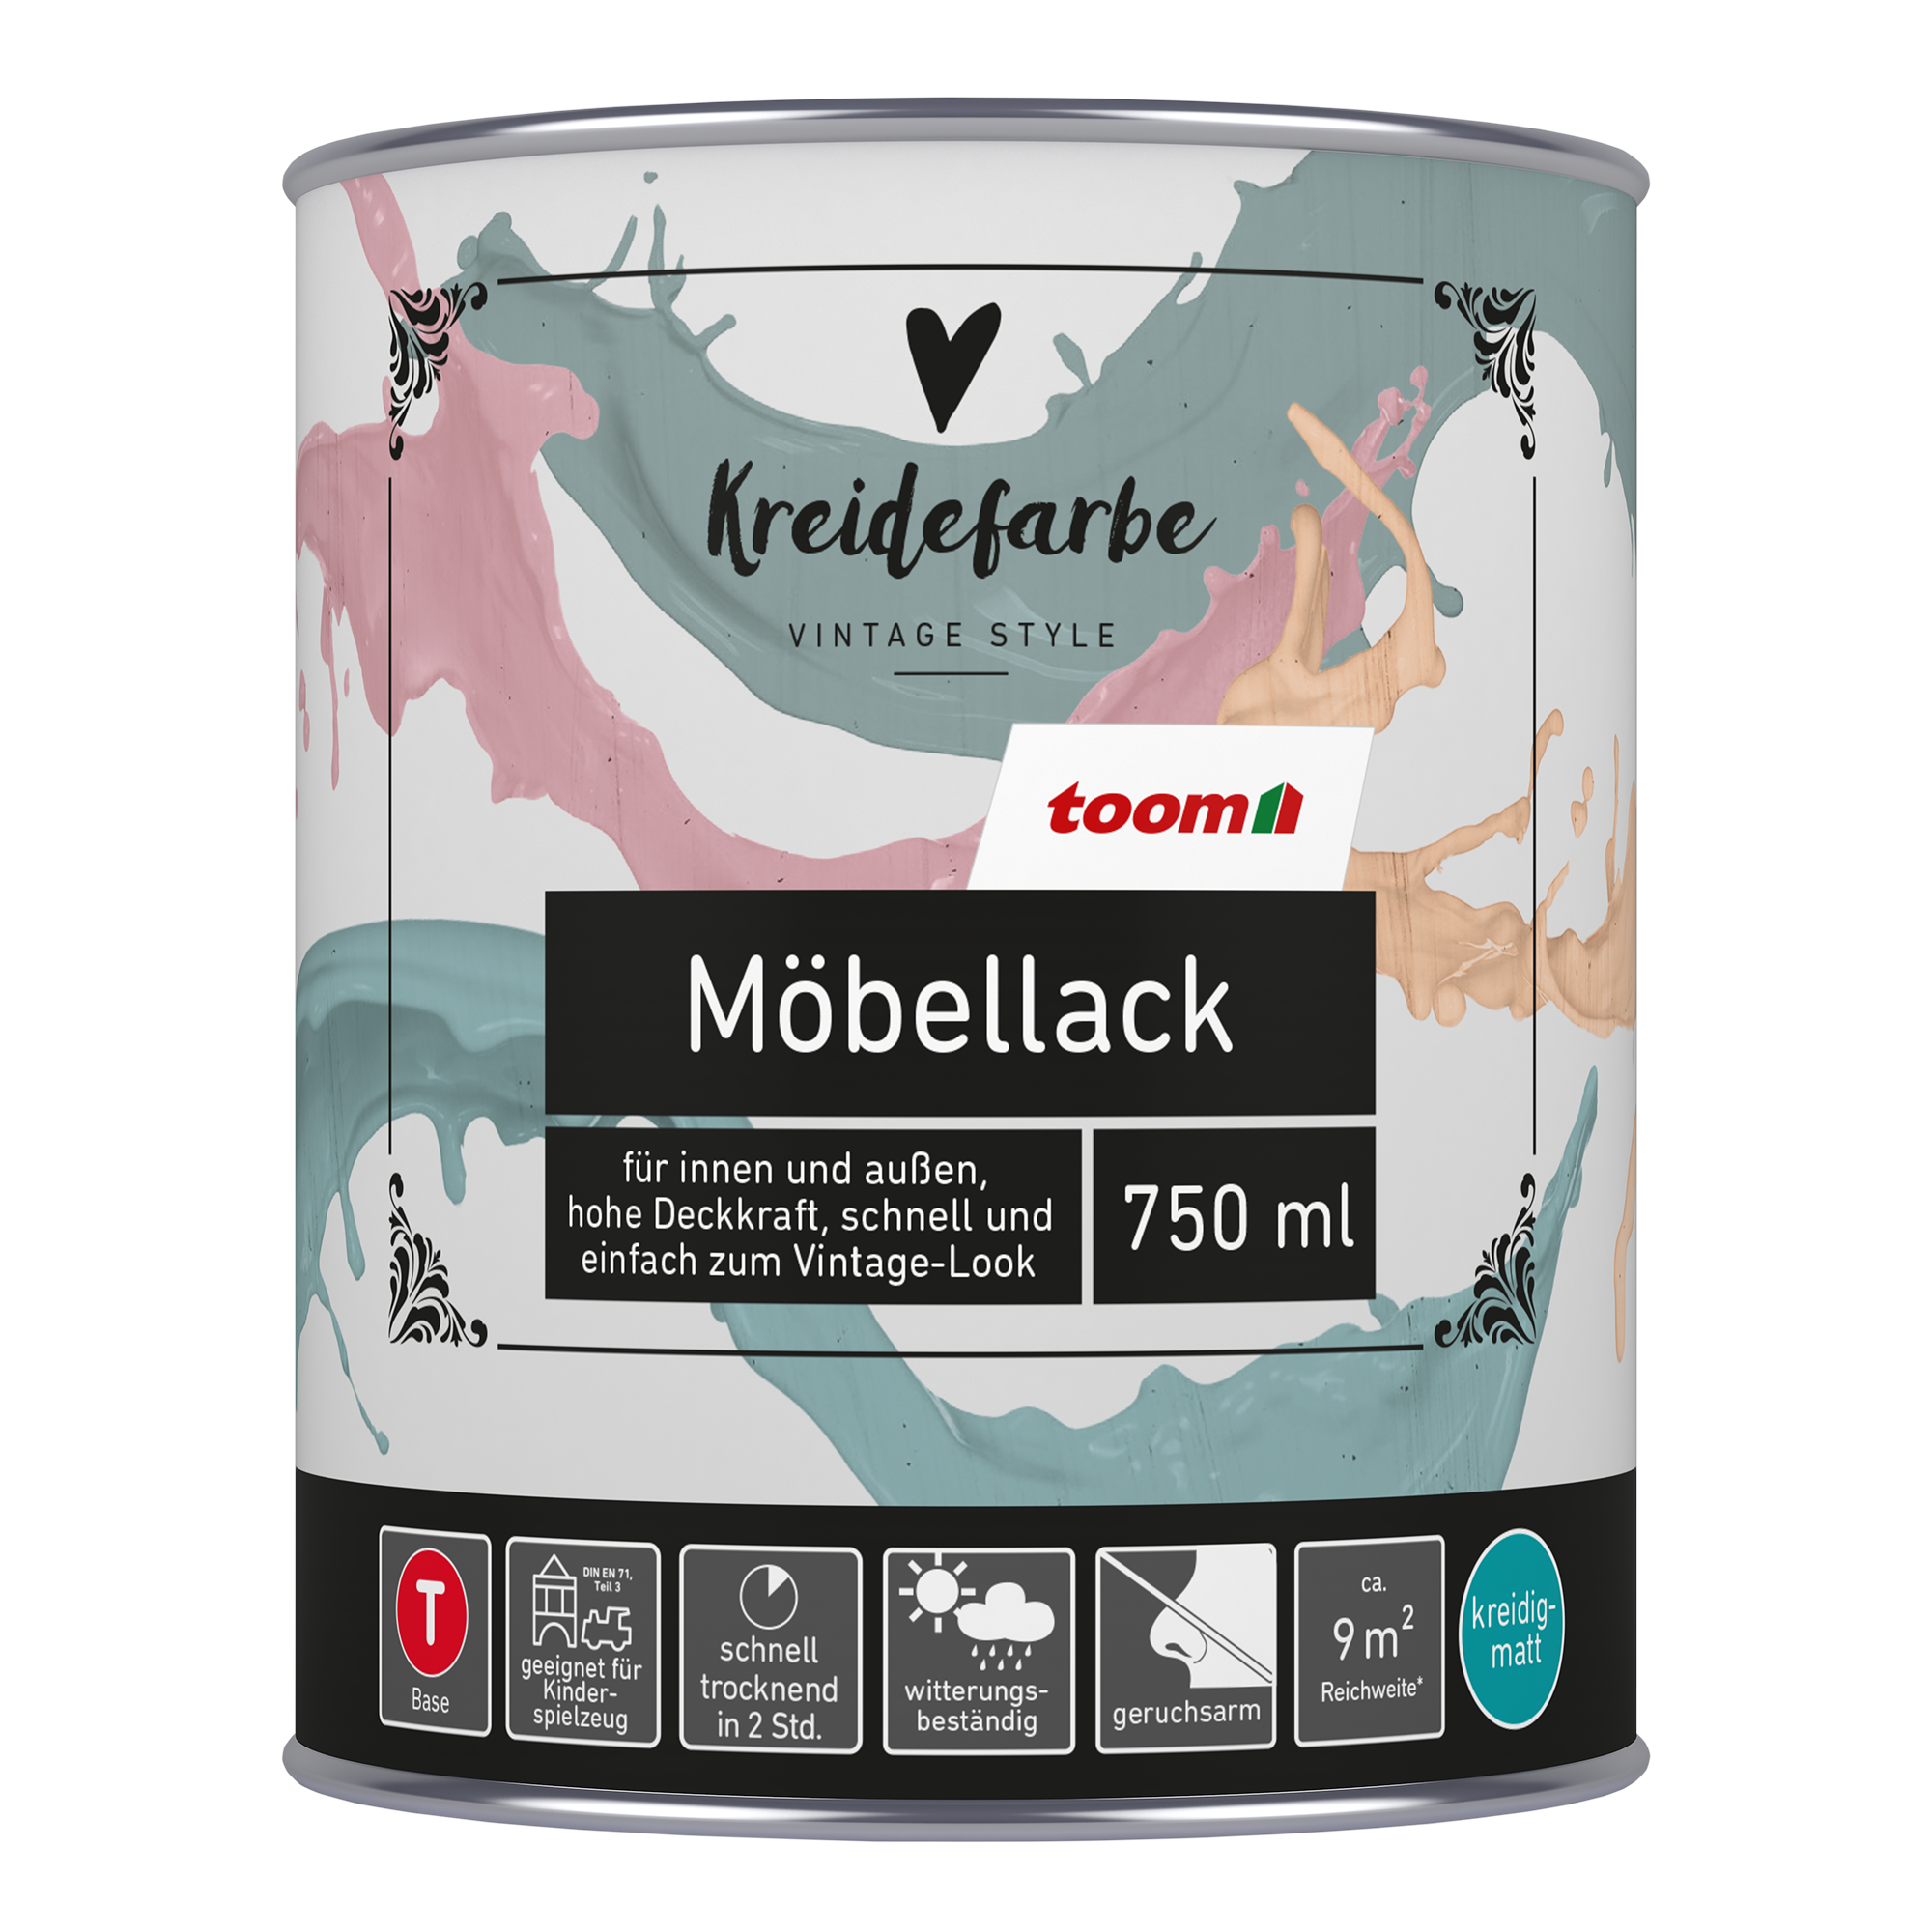 Kreidefarbe-Möbellack Base T 'Vintage Style' 750 ml + product picture